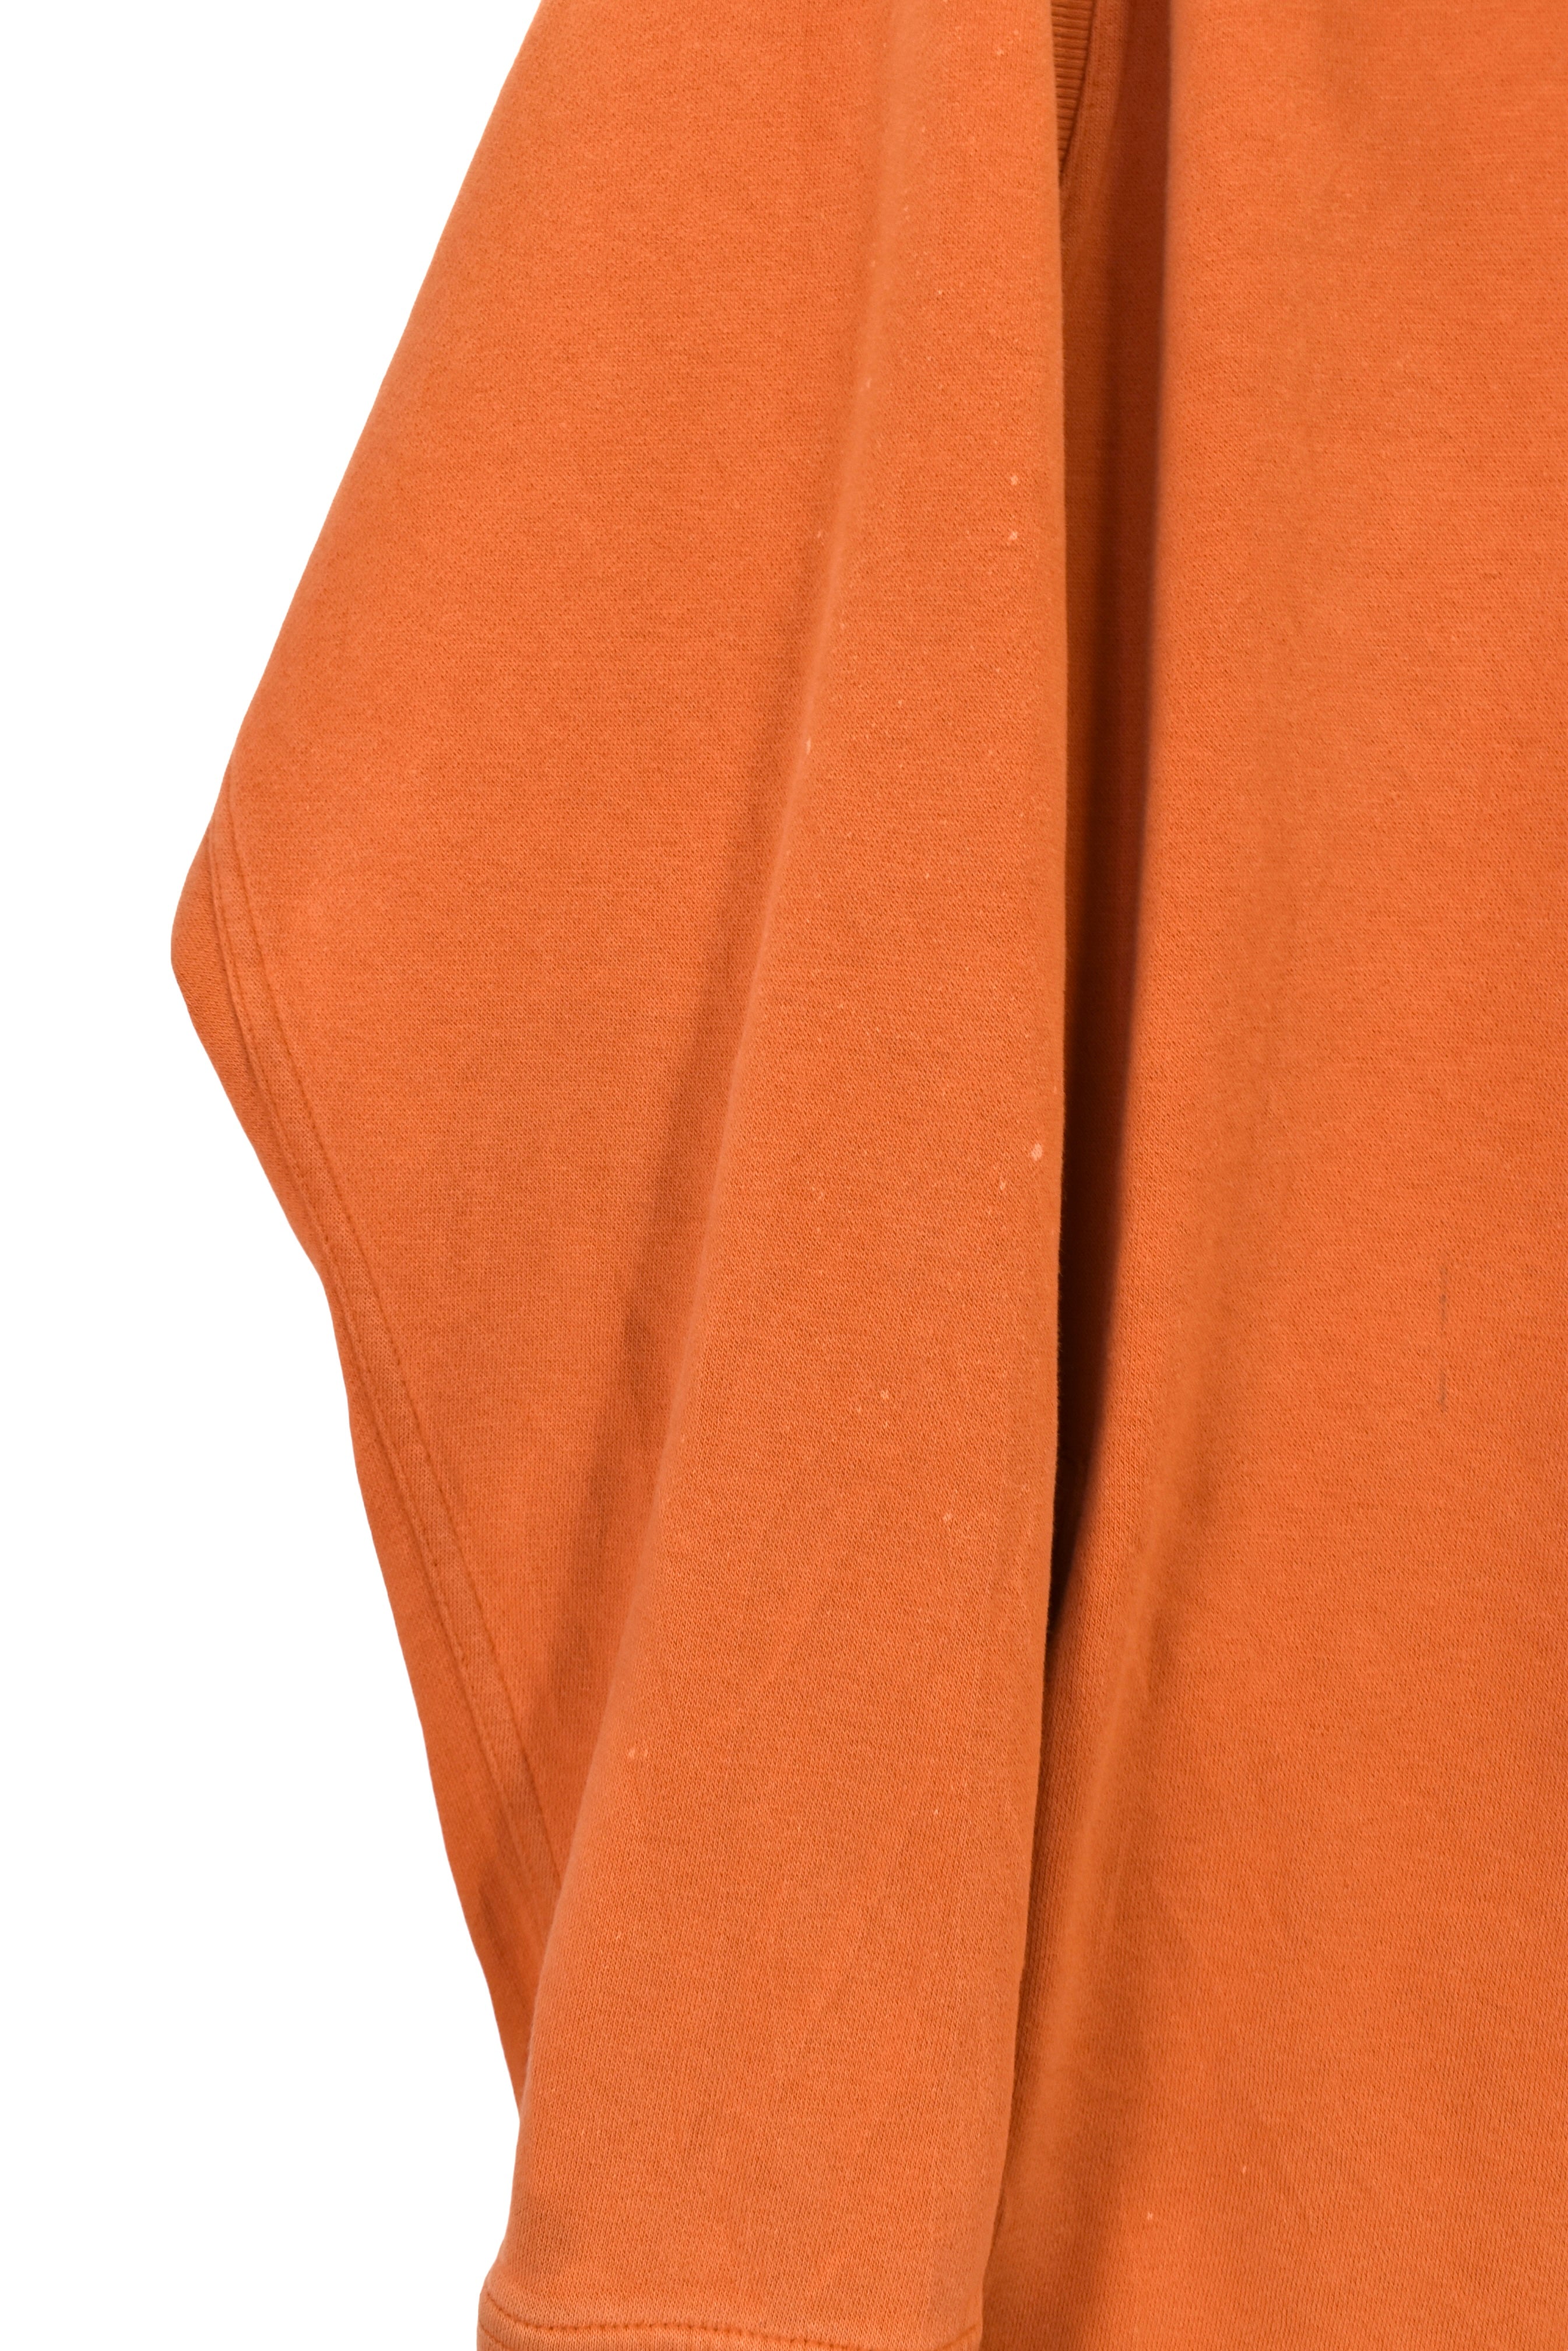 Vintage Texas Longhorns 1/4 zip (XL), orange Nike embroidered sweatshirt